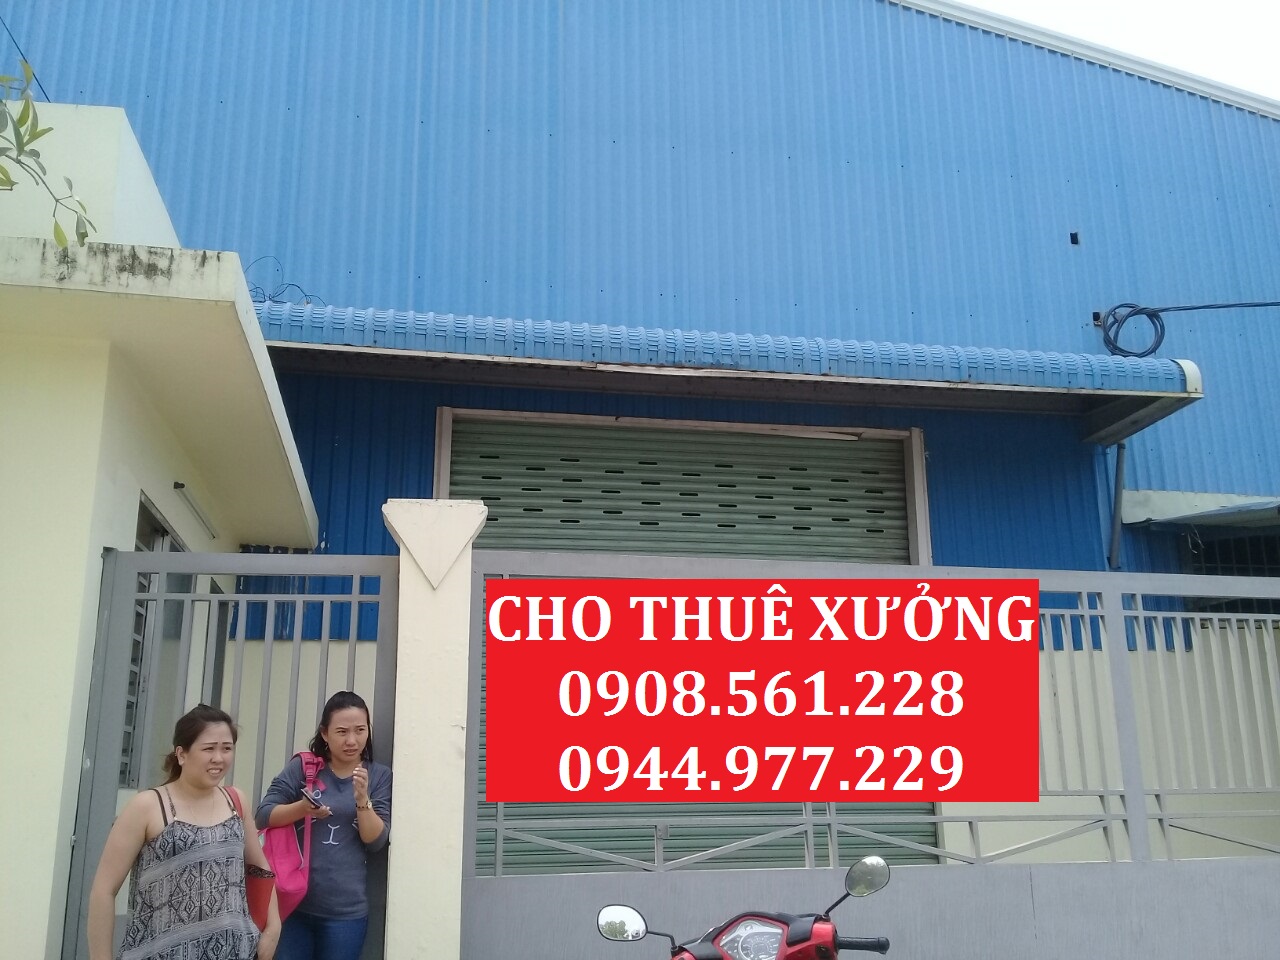 Cho thuê nhà xưởng nằm đường Lê Văn Khương - Q.12. DT: 2000m2 giá 60tr/tháng. LH: 0937.388.709